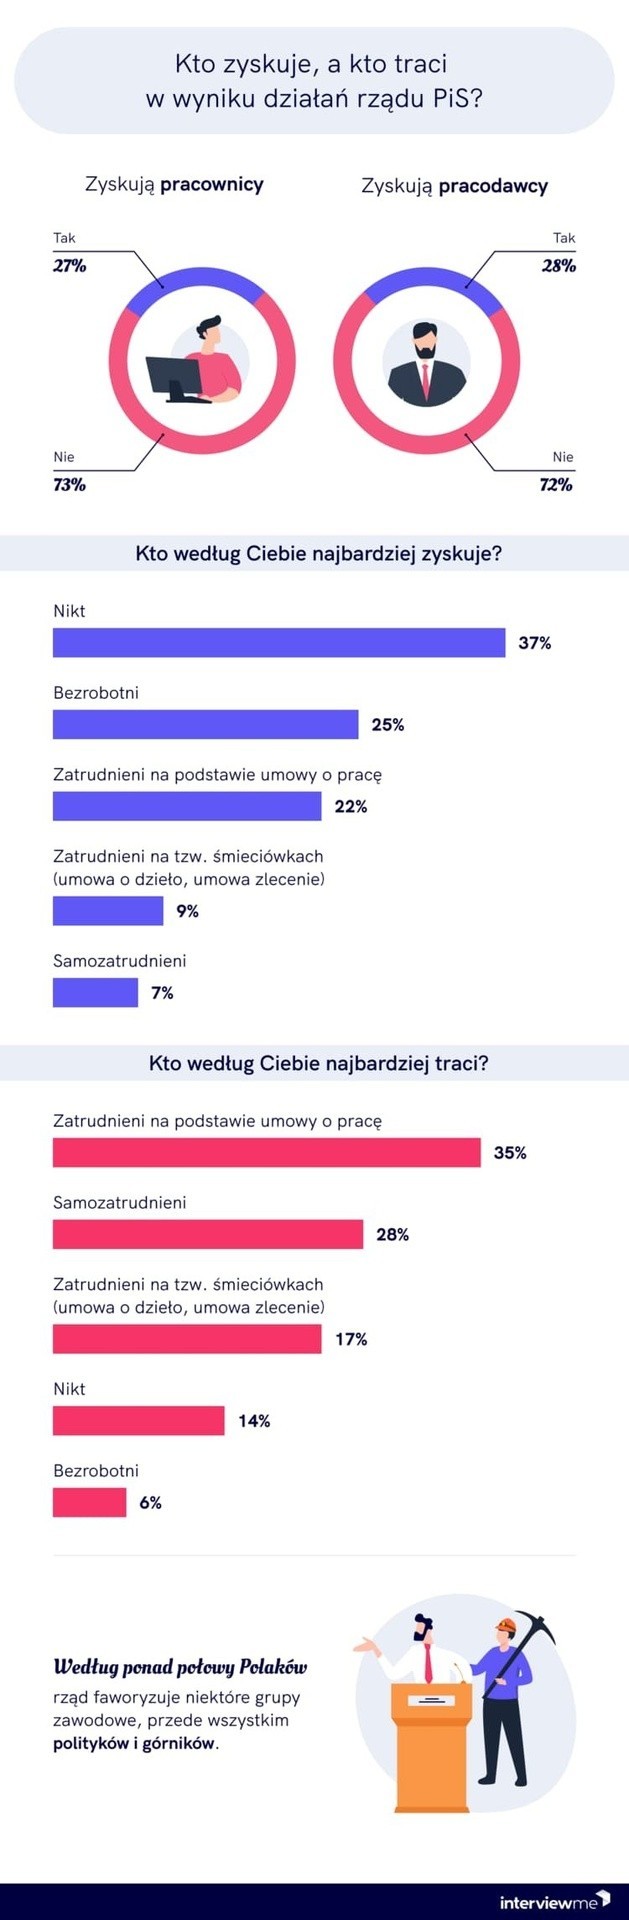 Przeprowadzono badanie: „Polacy oceniają działania rządu na rynku pracy”. Odpowiedzi są uzależnione od... poglądów politycznych